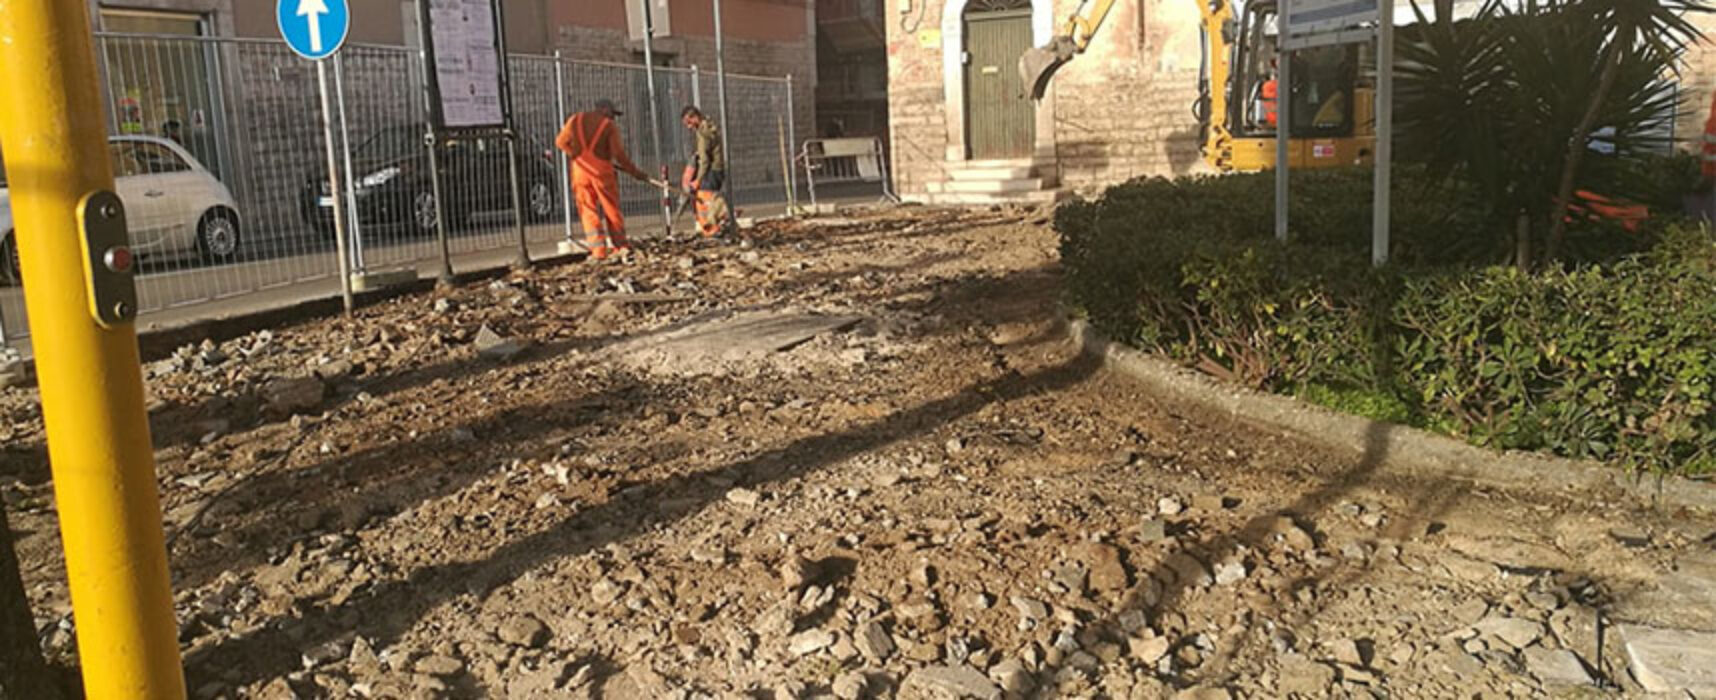 Cominciati lavori a villetta Logoluso, Angarano: “Tanti cantieri sono attivi in tutta la Città”